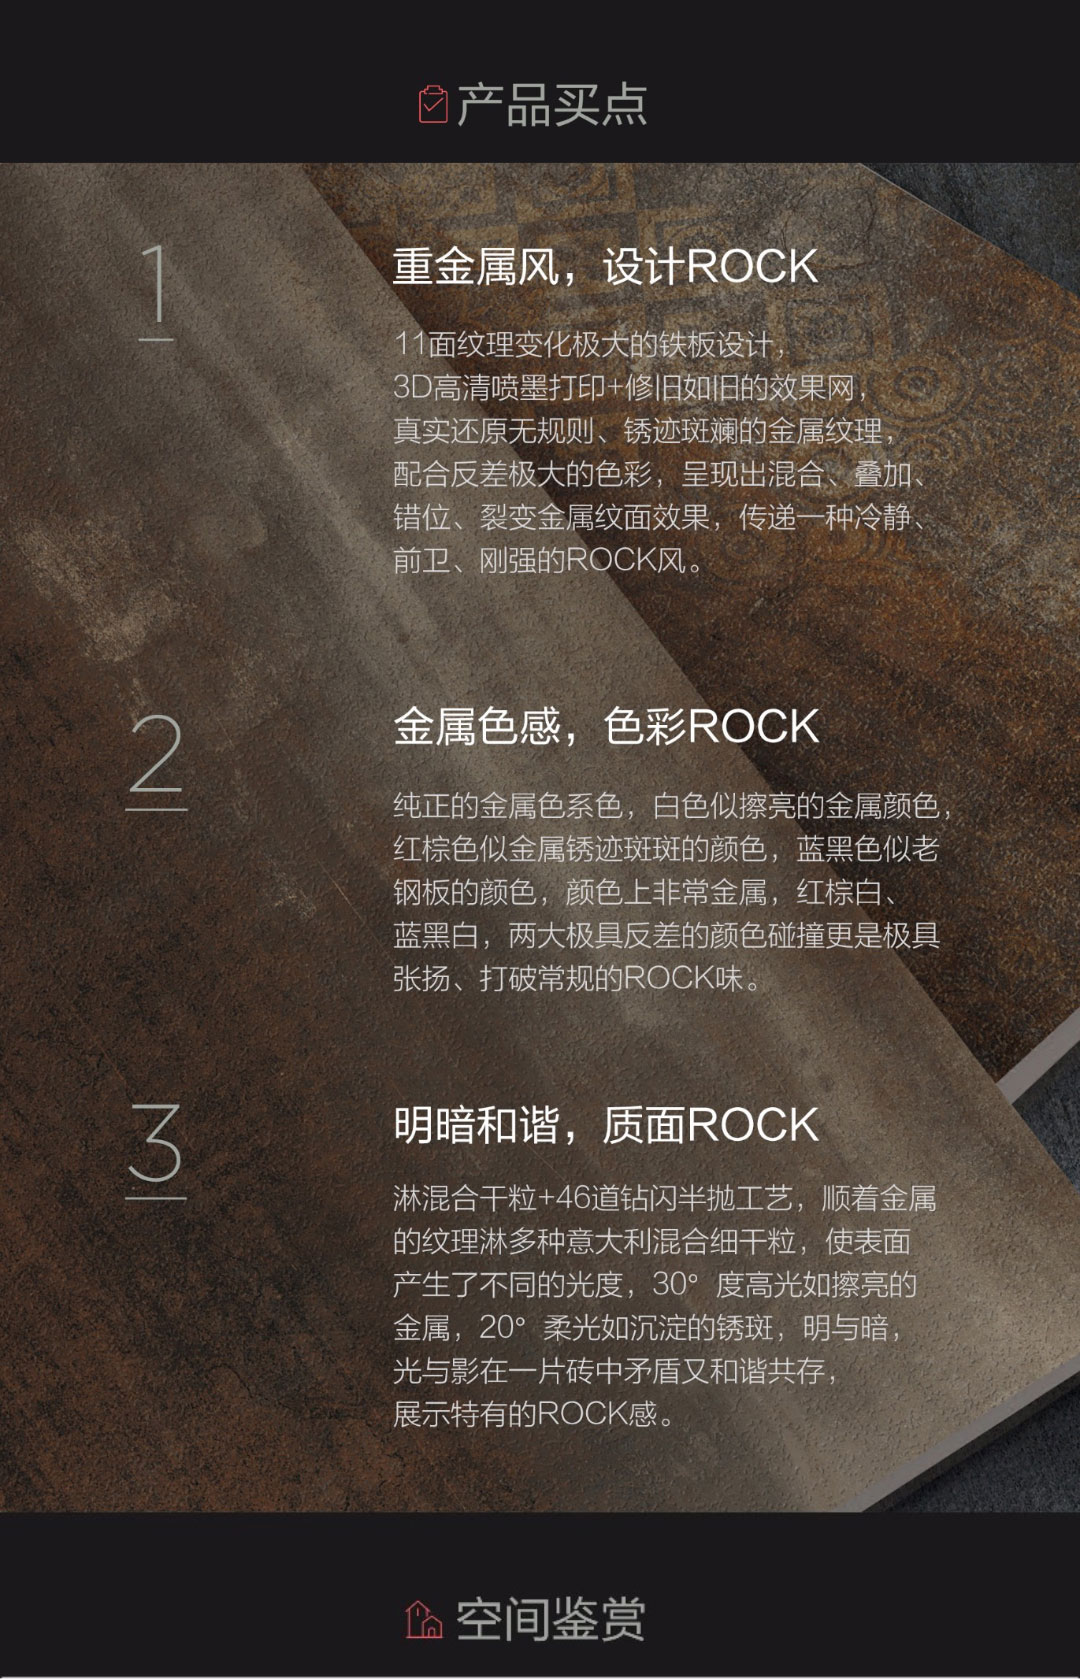 ROCK_02.jpg